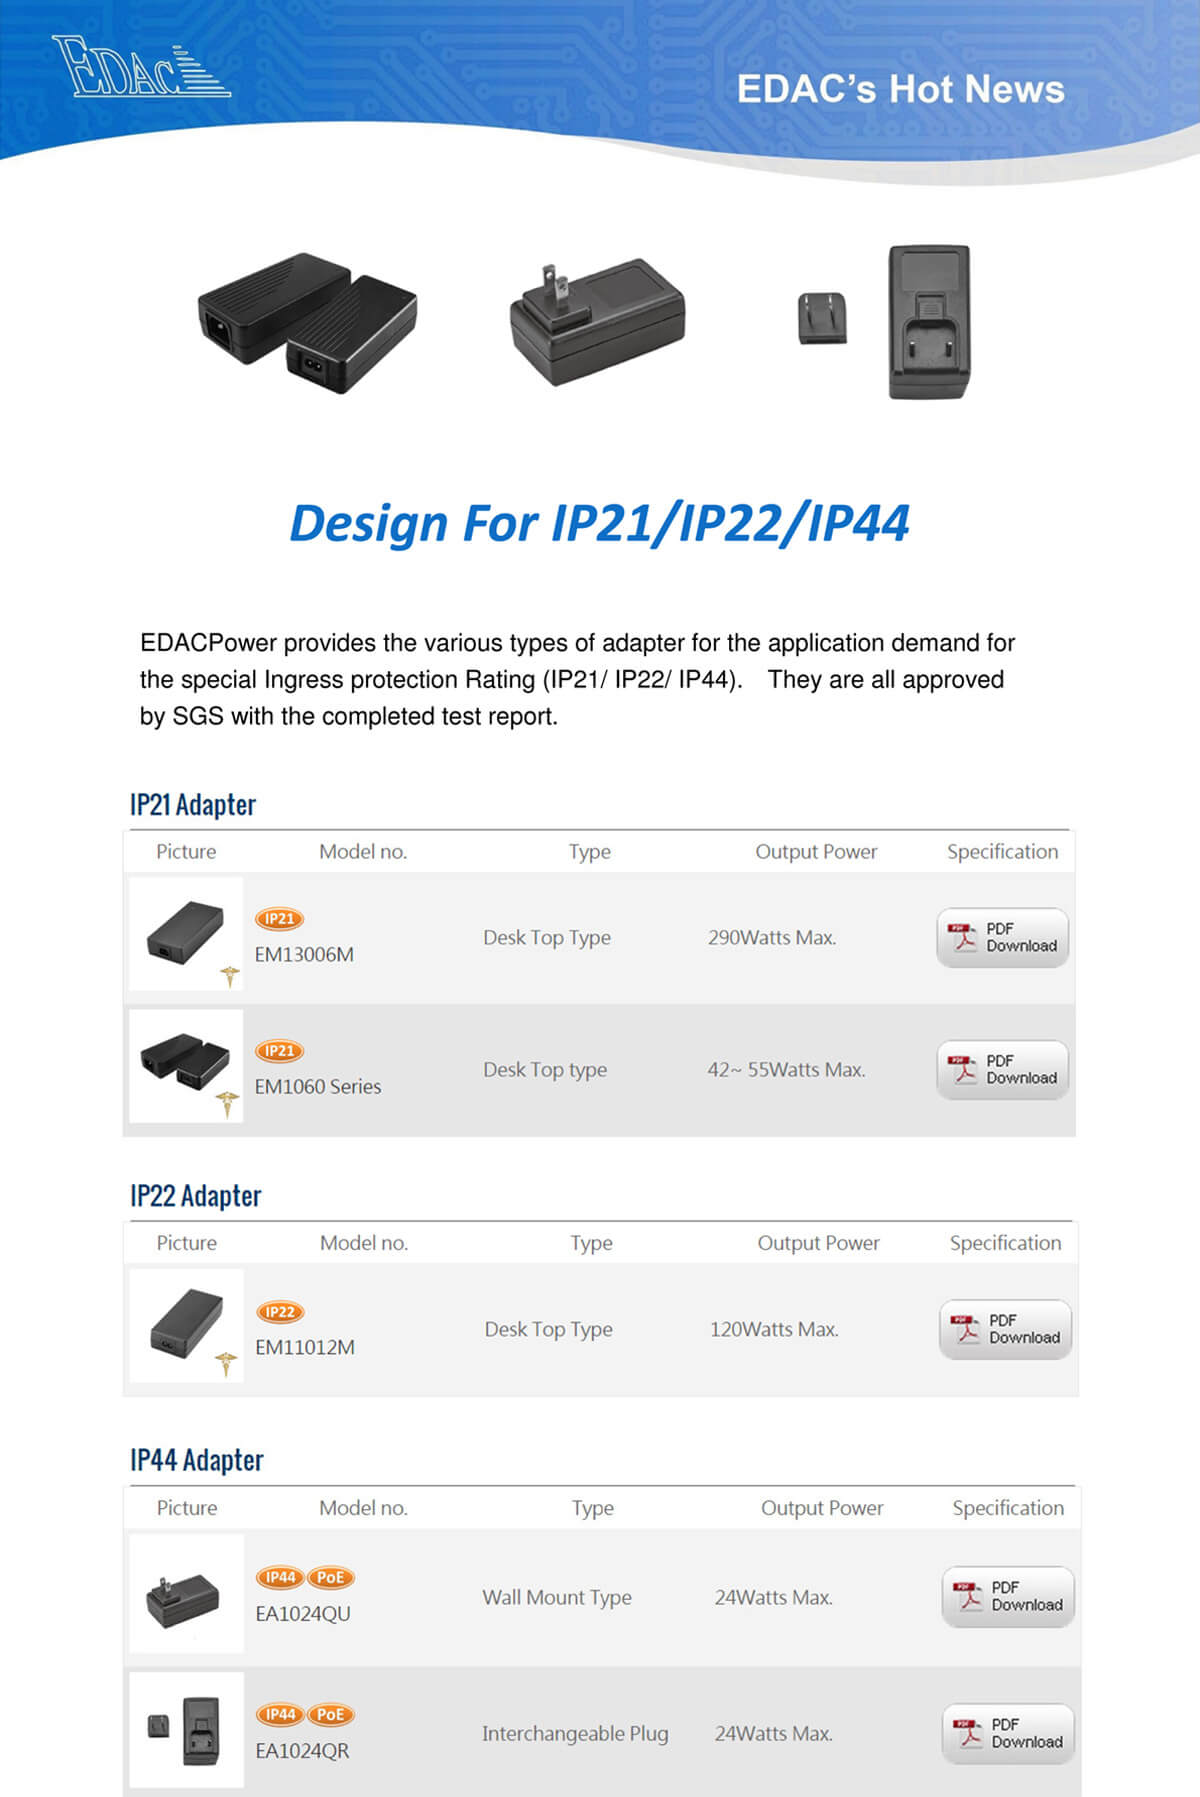 Design for IP21 / IP22 / IP44